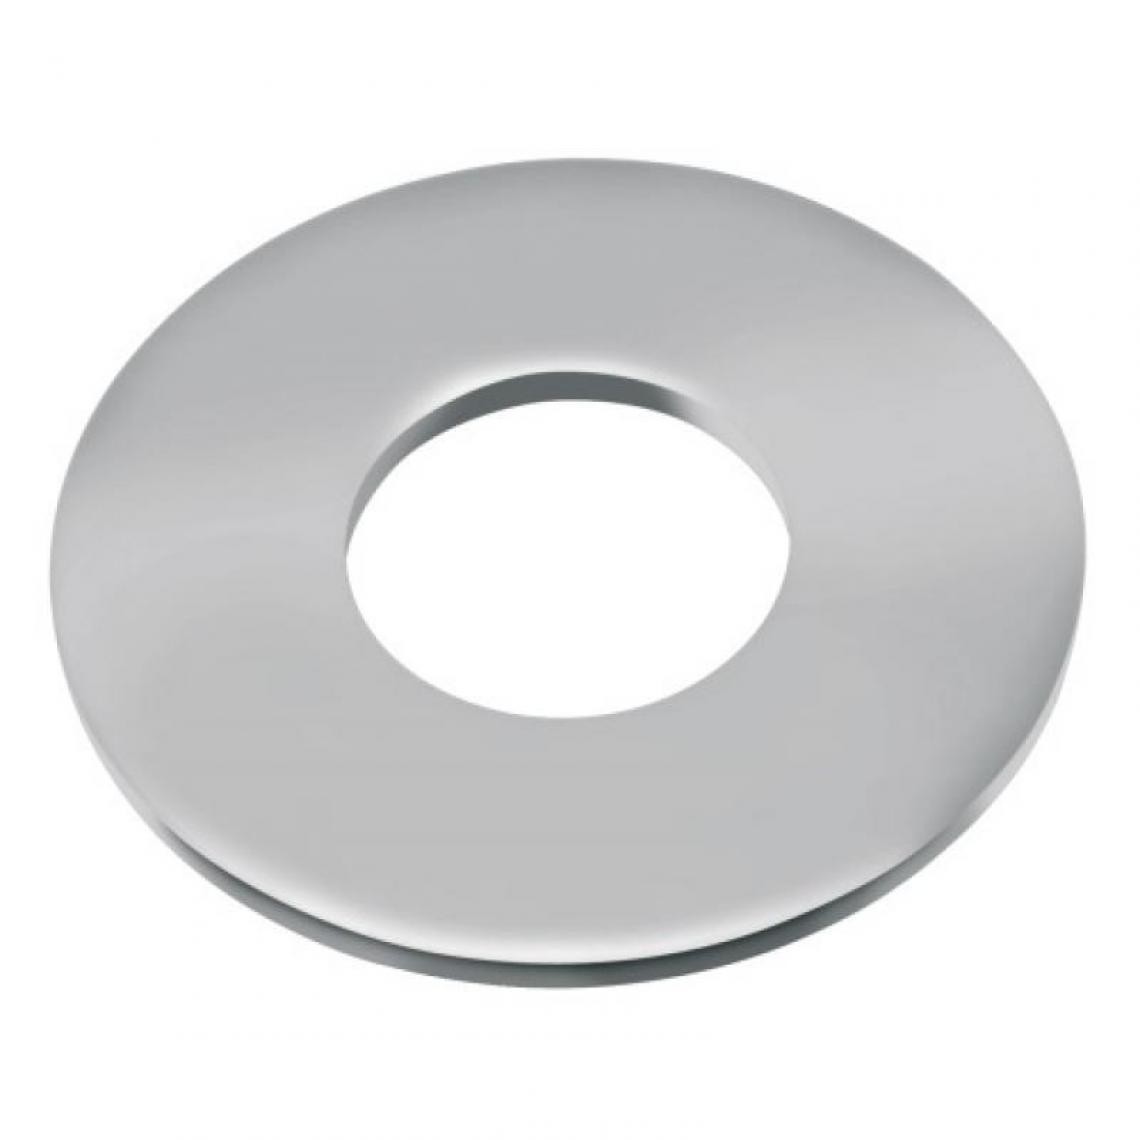 Acton - Rondelles plates série large Lu inox A4, diamètre 4 mm, boîte de 200 pièces - Charnière de fenetre